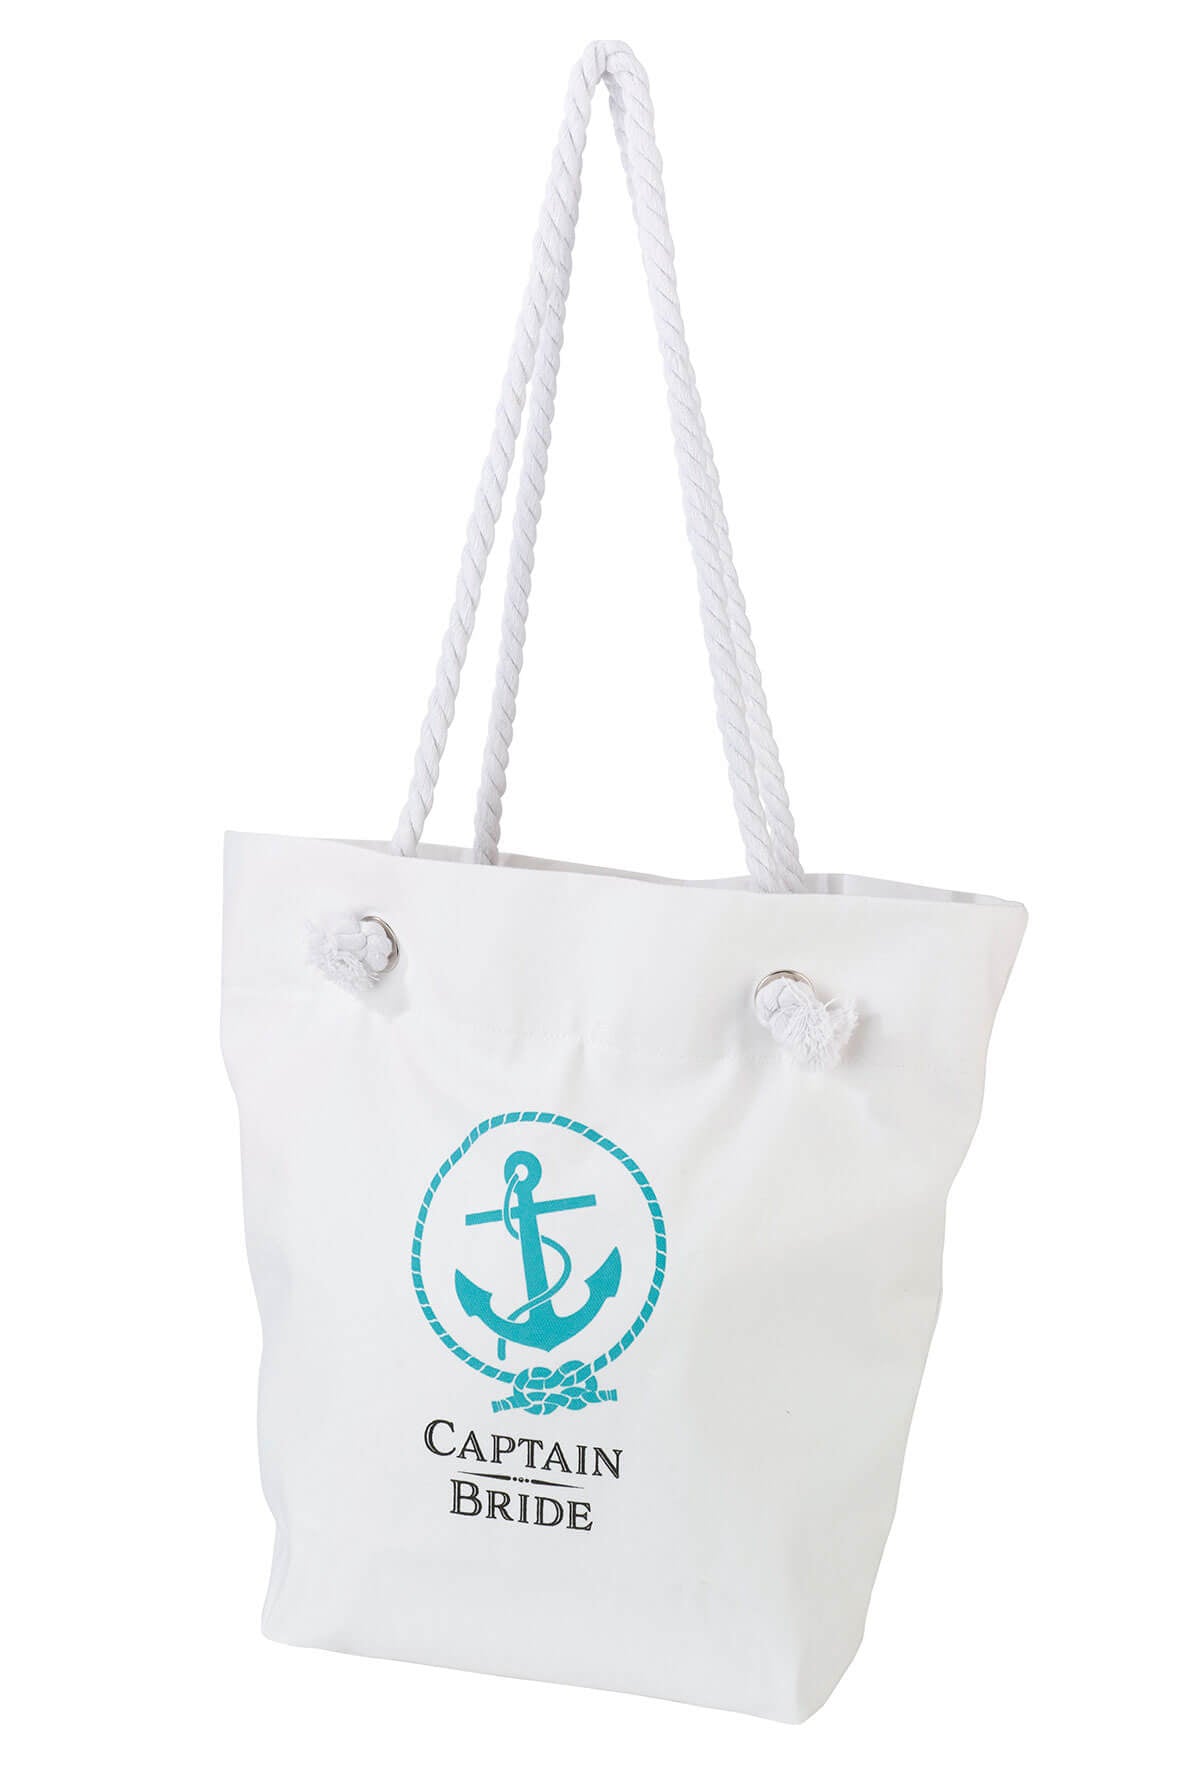 Coastal Anchor Captain Bride Beach Bag